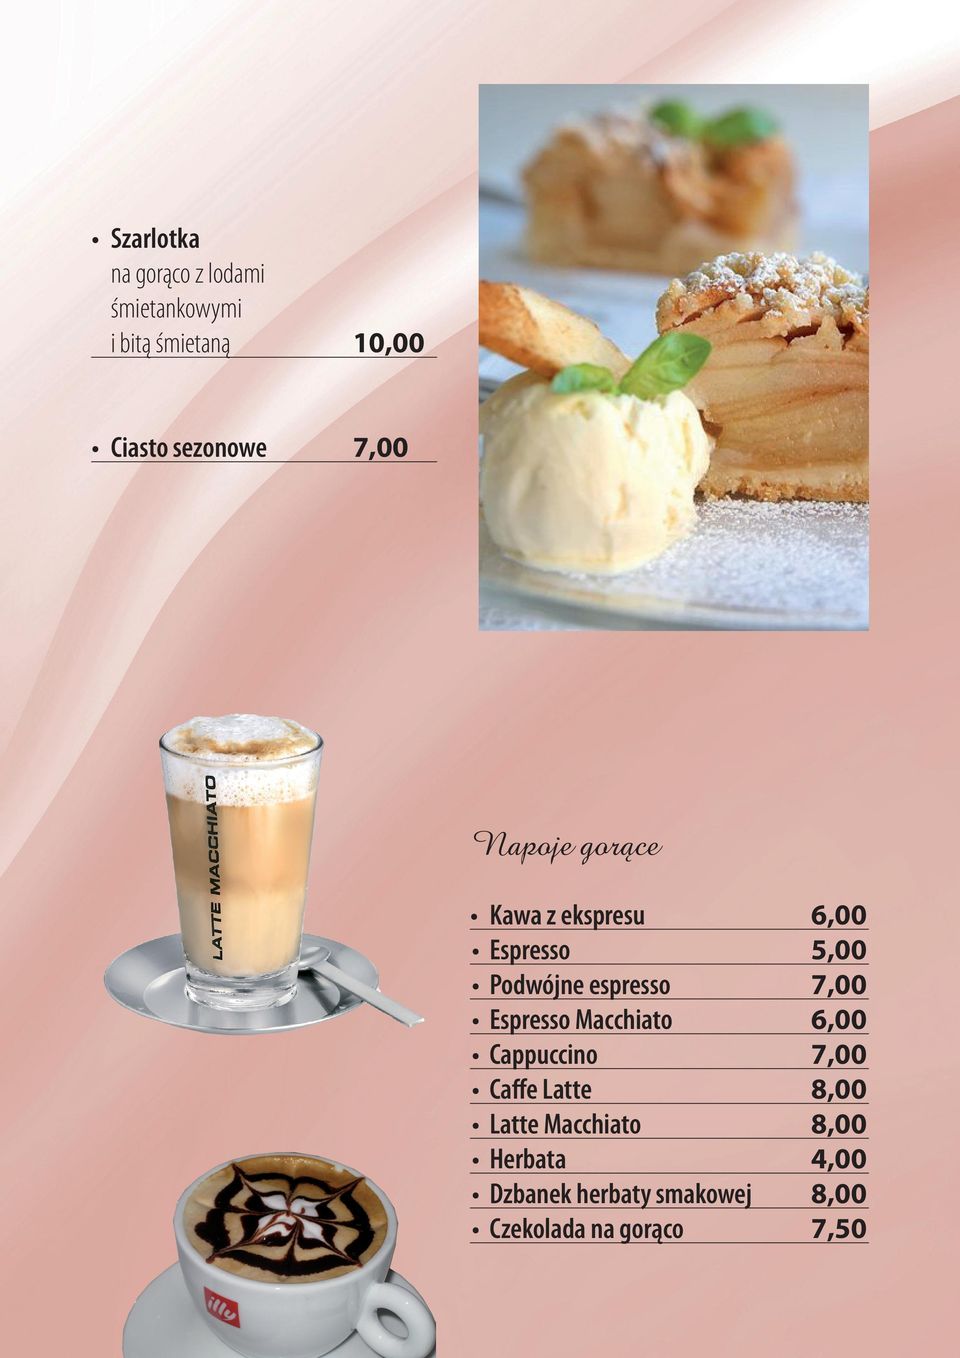 espresso 7,00 Espresso Macchiato 6,00 Cappuccino 7,00 Caffe Latte 8,00